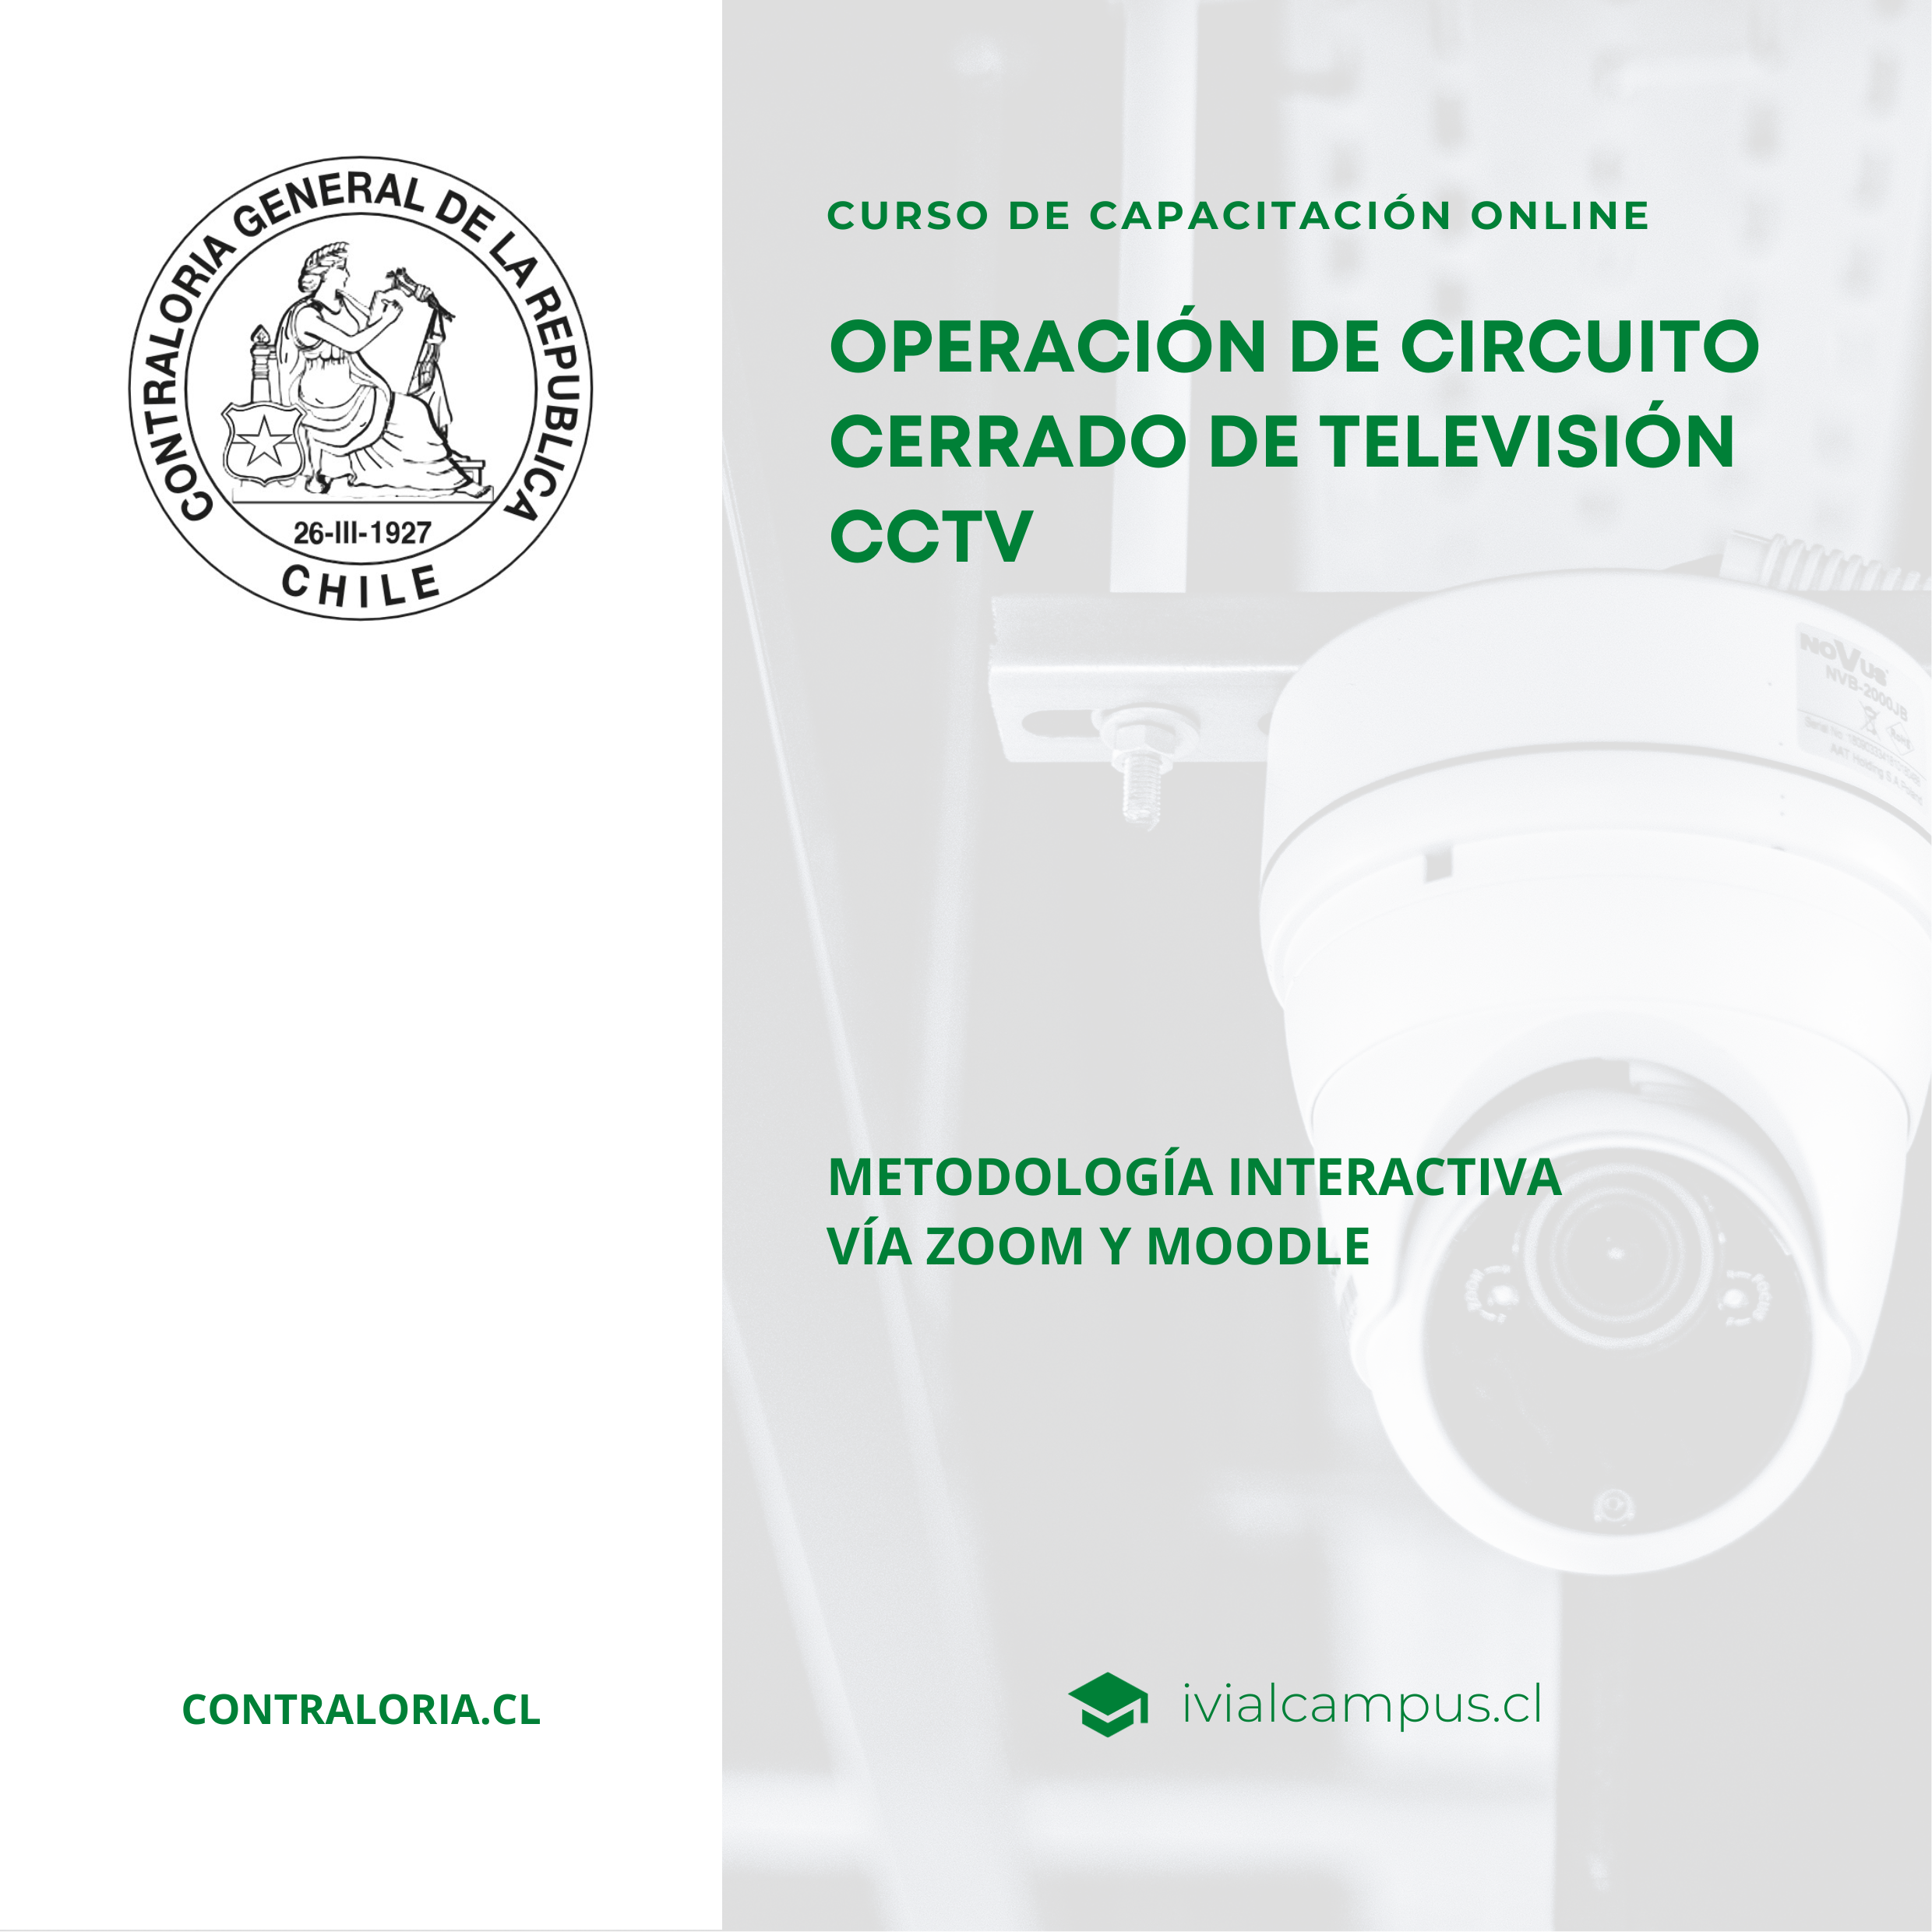 CONTRALORÍA GENERAL DE LA REPÚBLICA (Nivel Nacional): Operación de Circuito Cerrado de Televisión CCTV